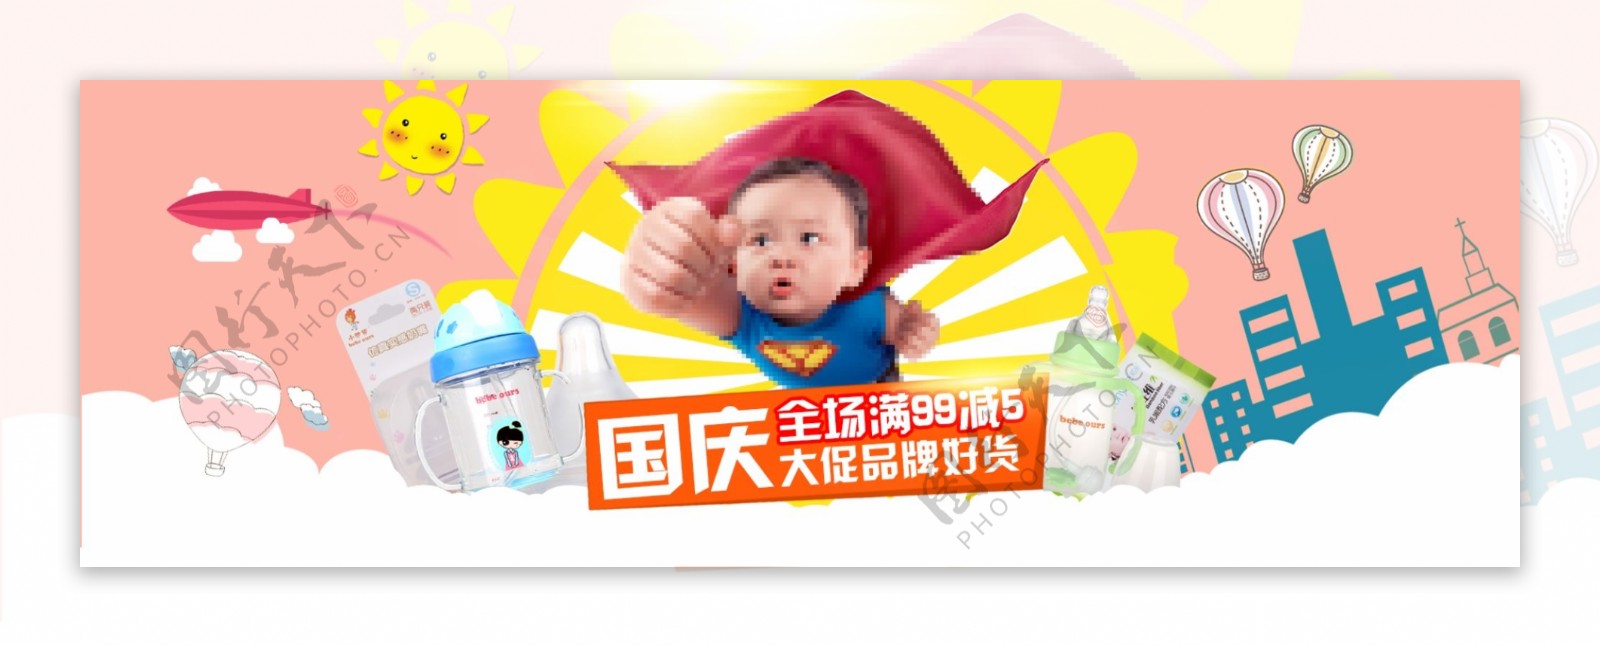 淘宝促销活动儿童海报母婴奶粉护肤品海报